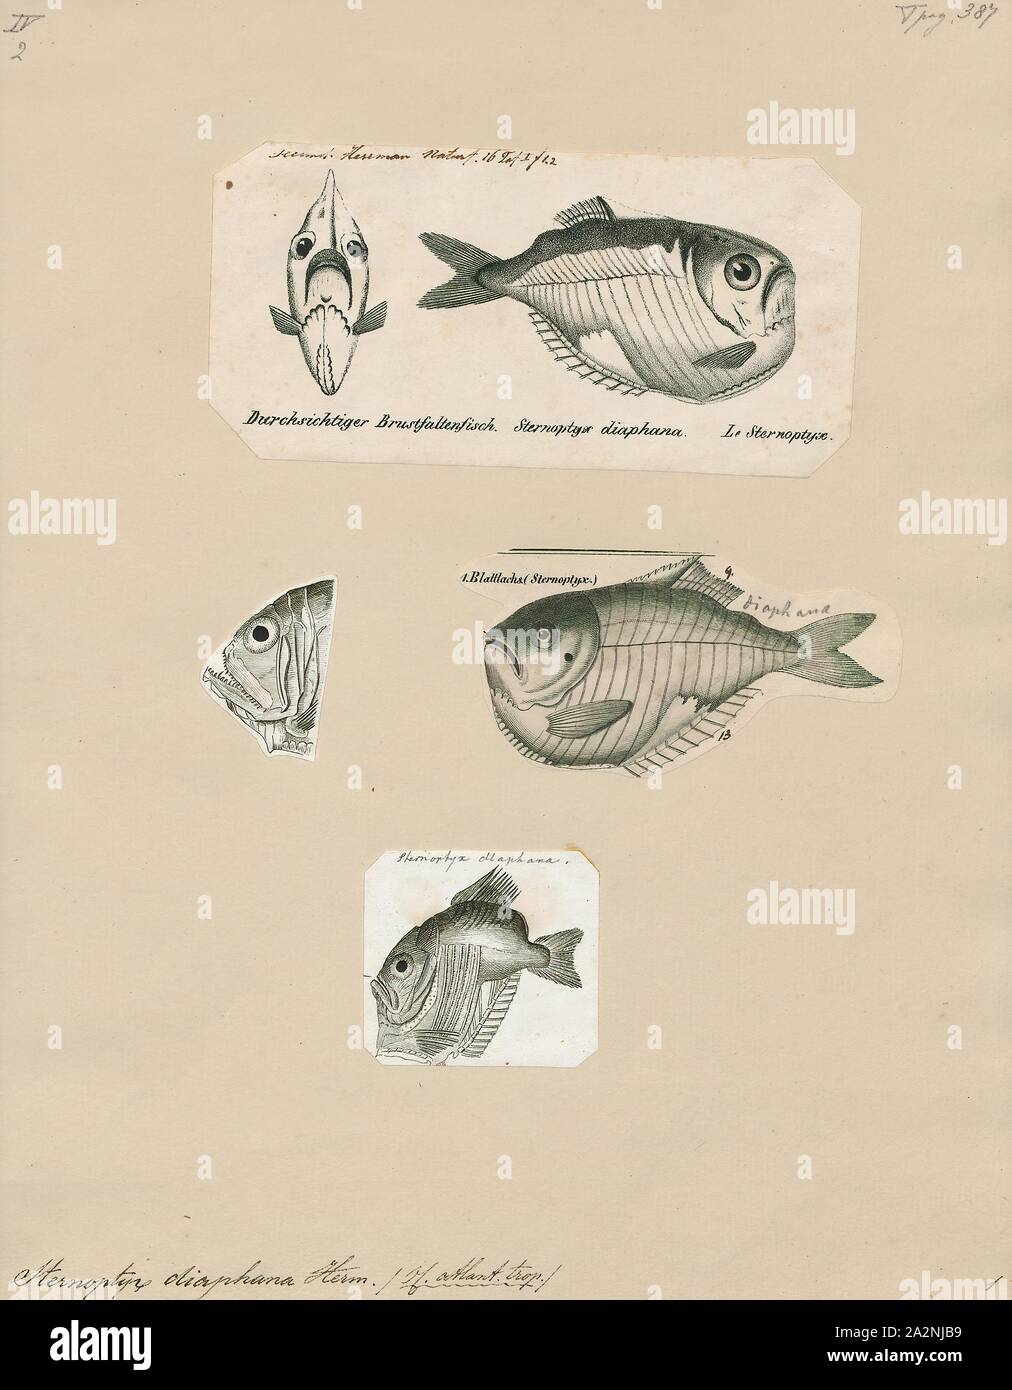 Sternoptyx diaphana, Drucken, Sternoptyx diaphana, die Durchscheinenden hatchetfish, ist eine Pflanzenart aus der Gattung der Deep Sea Ray-finned fish in der Familie Sternoptychidae. Es ist die einzige Art der Gattung Sternoptyx, und wurde zum ersten Mal von dem französischen Naturforscher Johann Hermann 1781 beschrieben., 1700-1880 Stockfoto